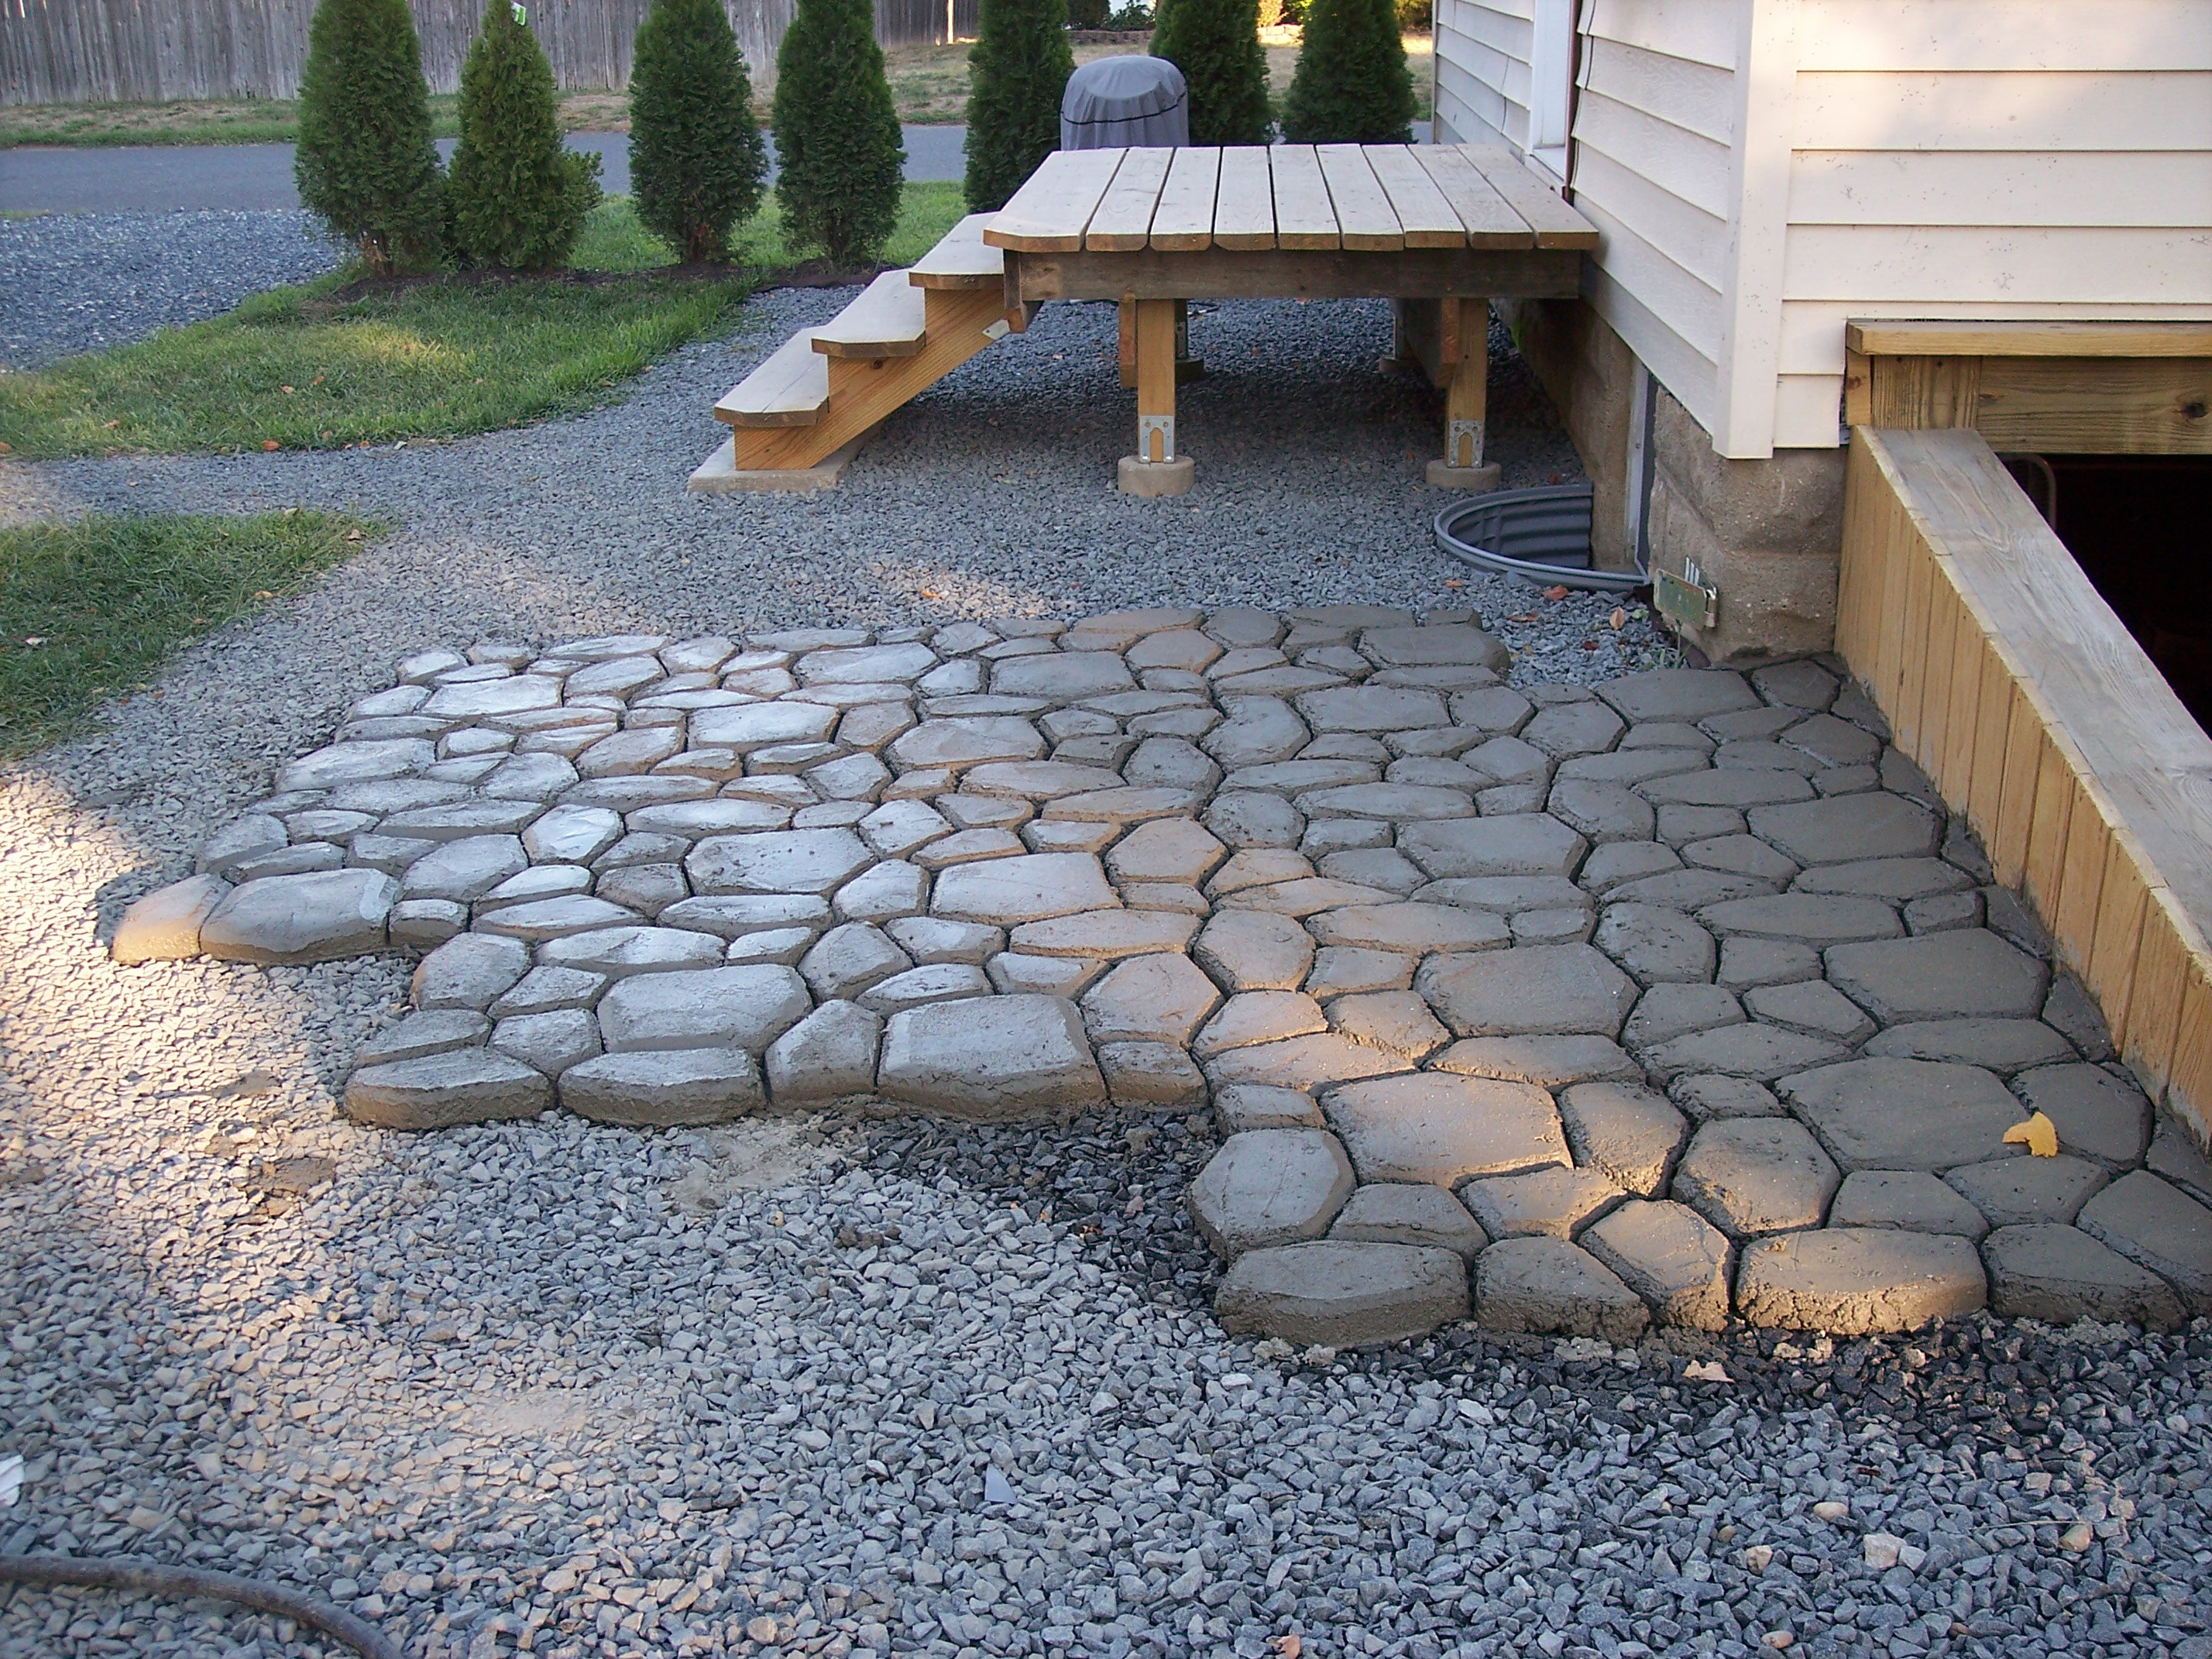 Best ideas about DIY Concrete Forms
. Save or Pin DIY Massive Concrete Cobblestone Patio Now.